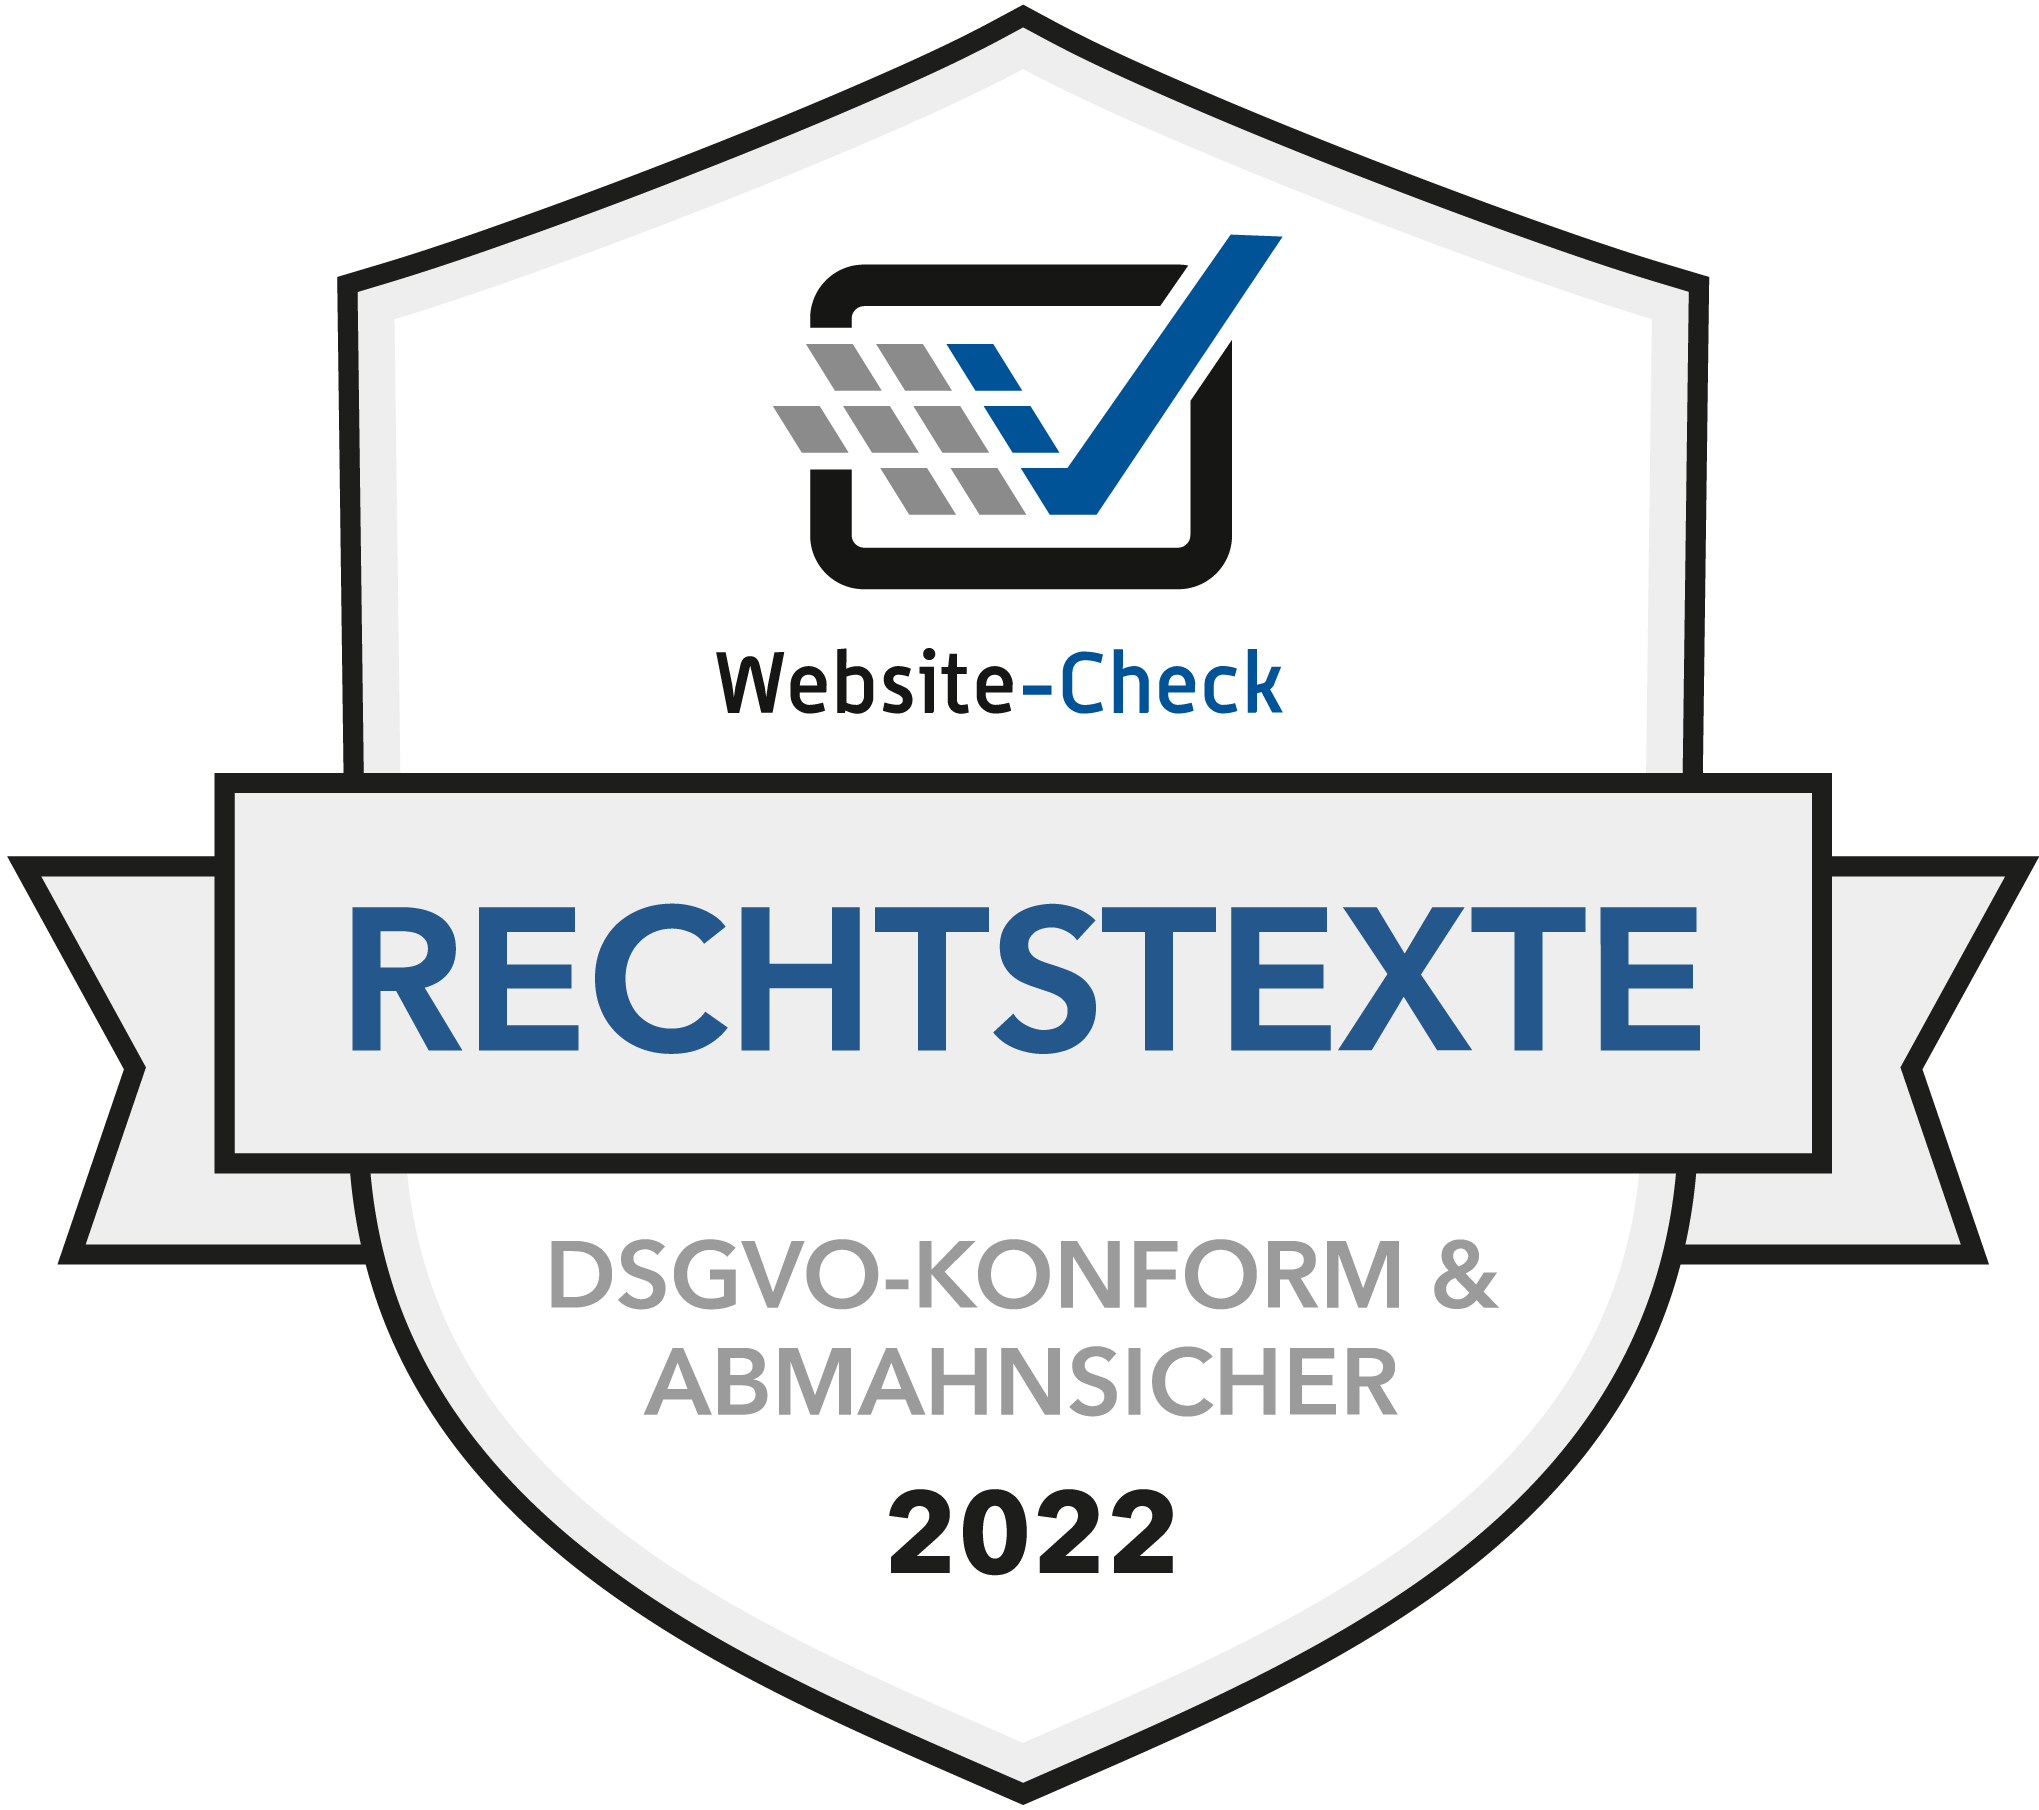 Siegel der Website-Check GmbH